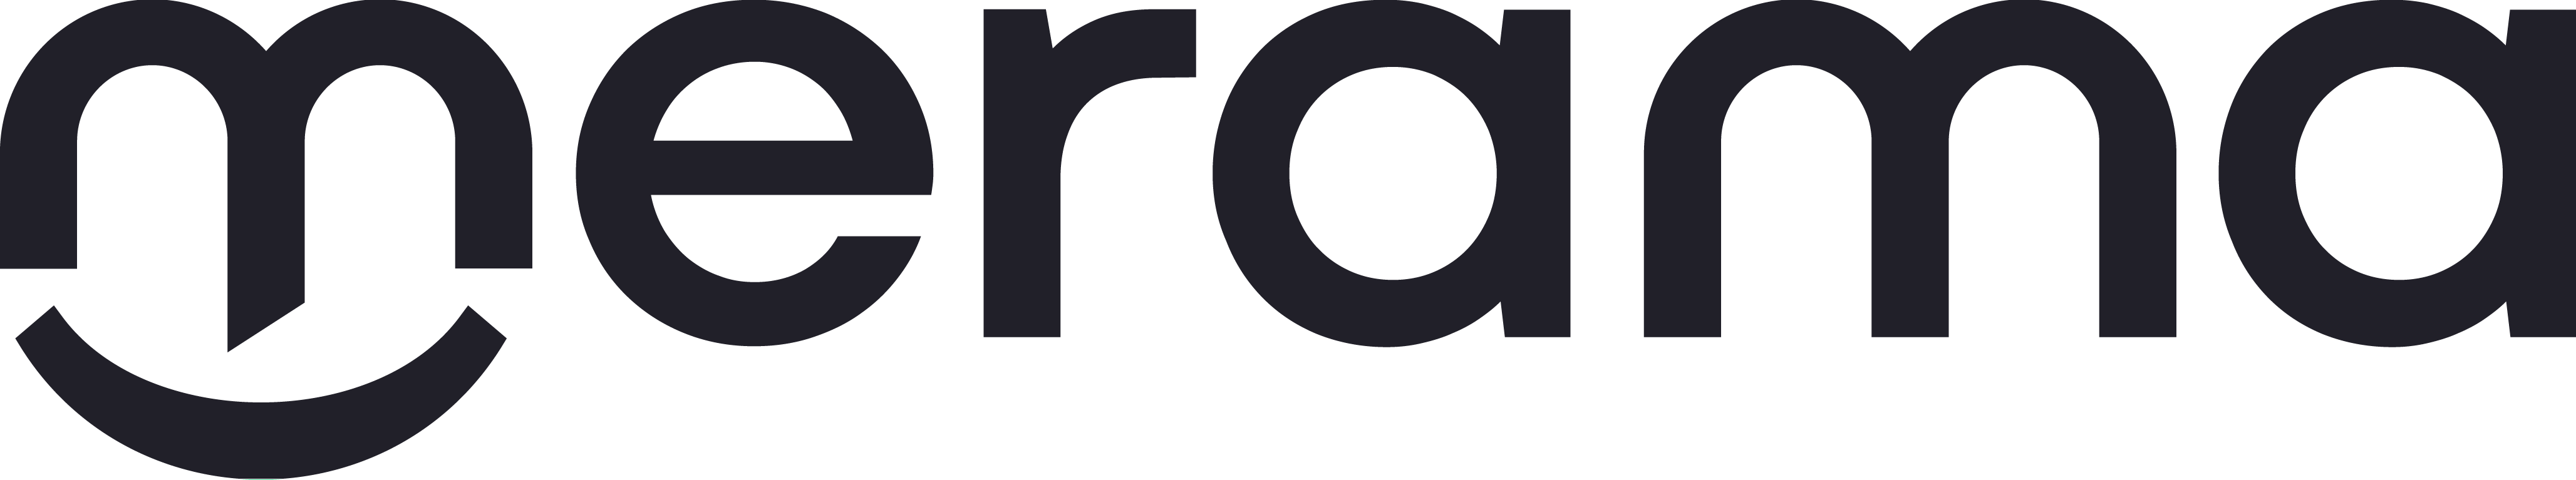 Merama logo